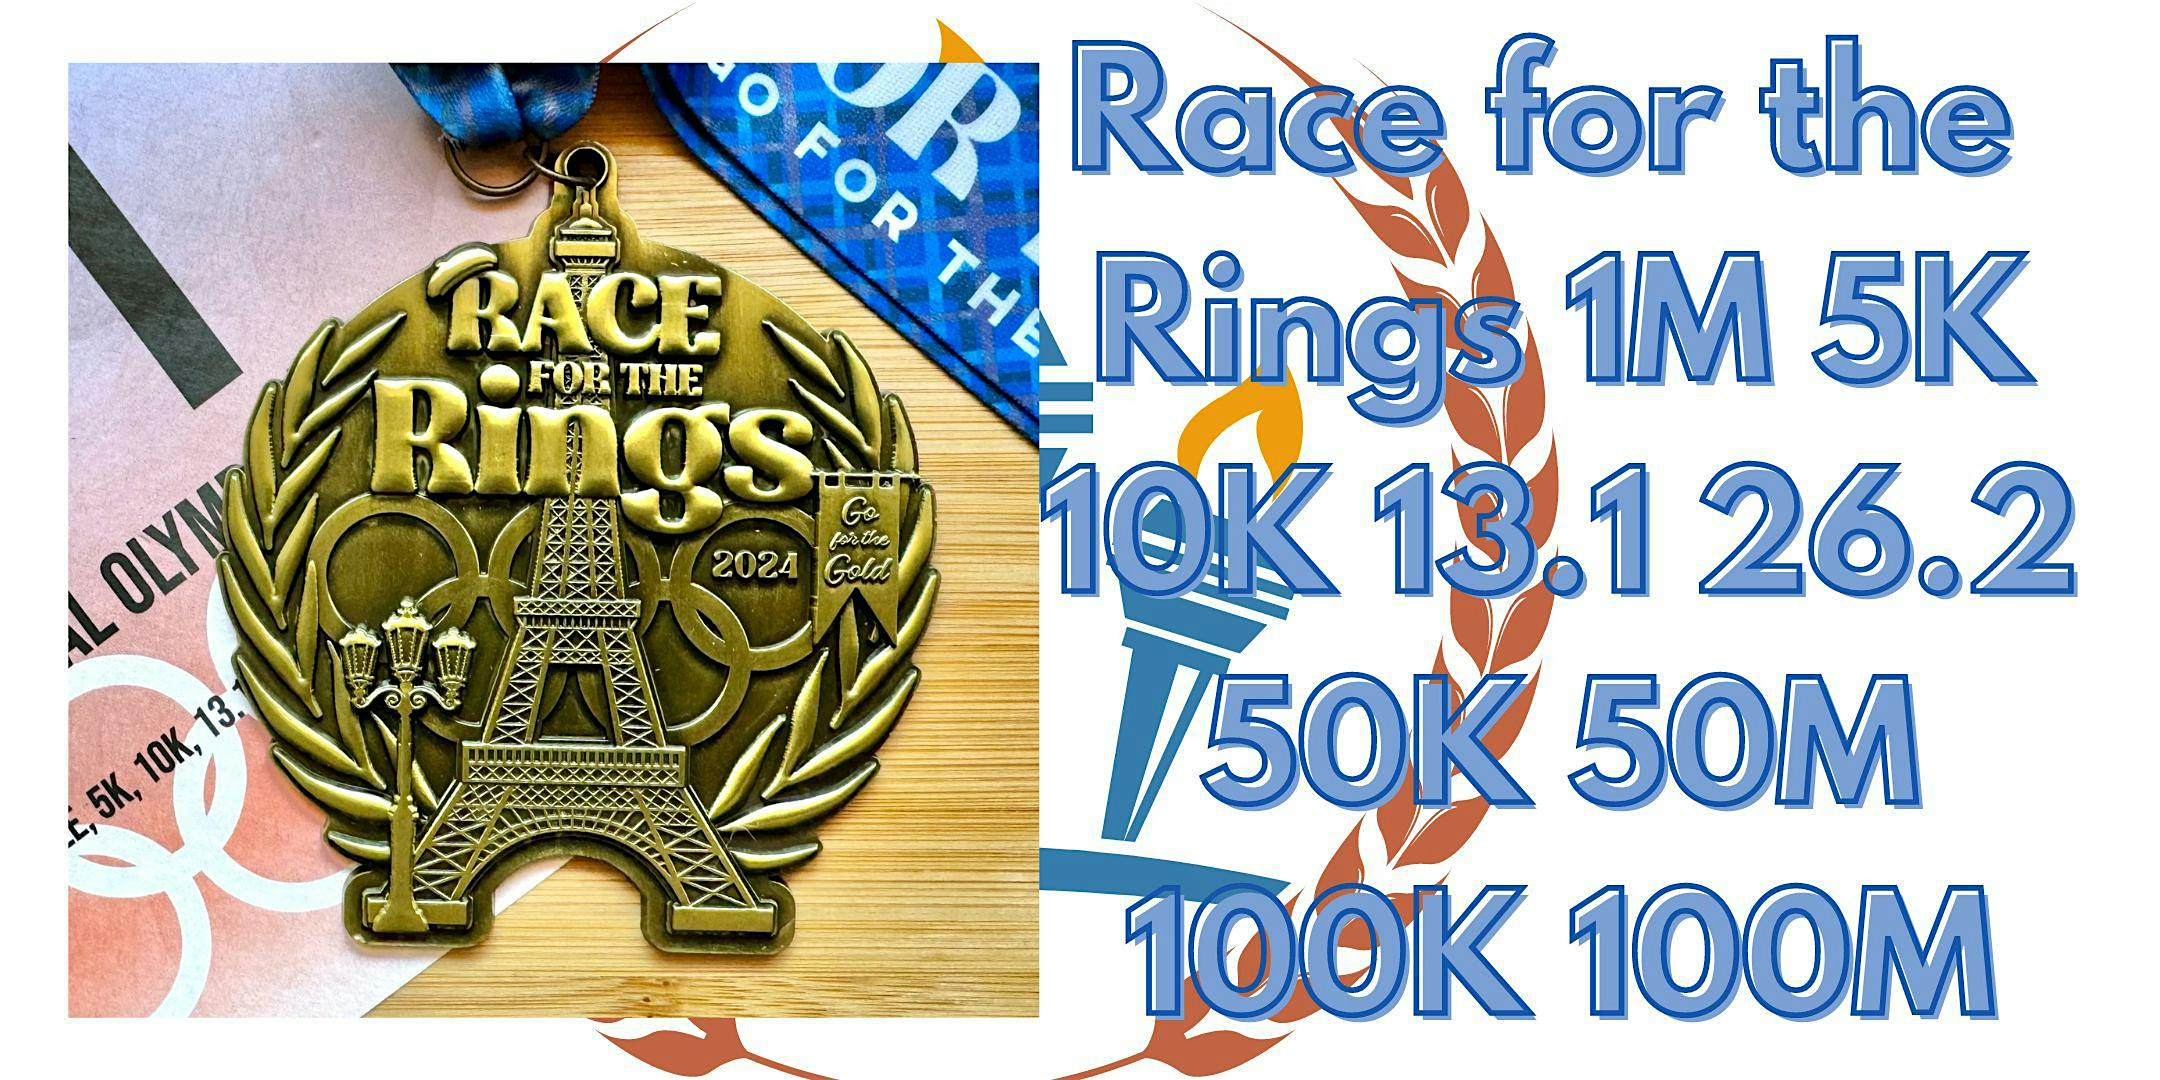 Race for the Rings 1M 5K 10K 13.1 26.2 50K 50M 100K 100M